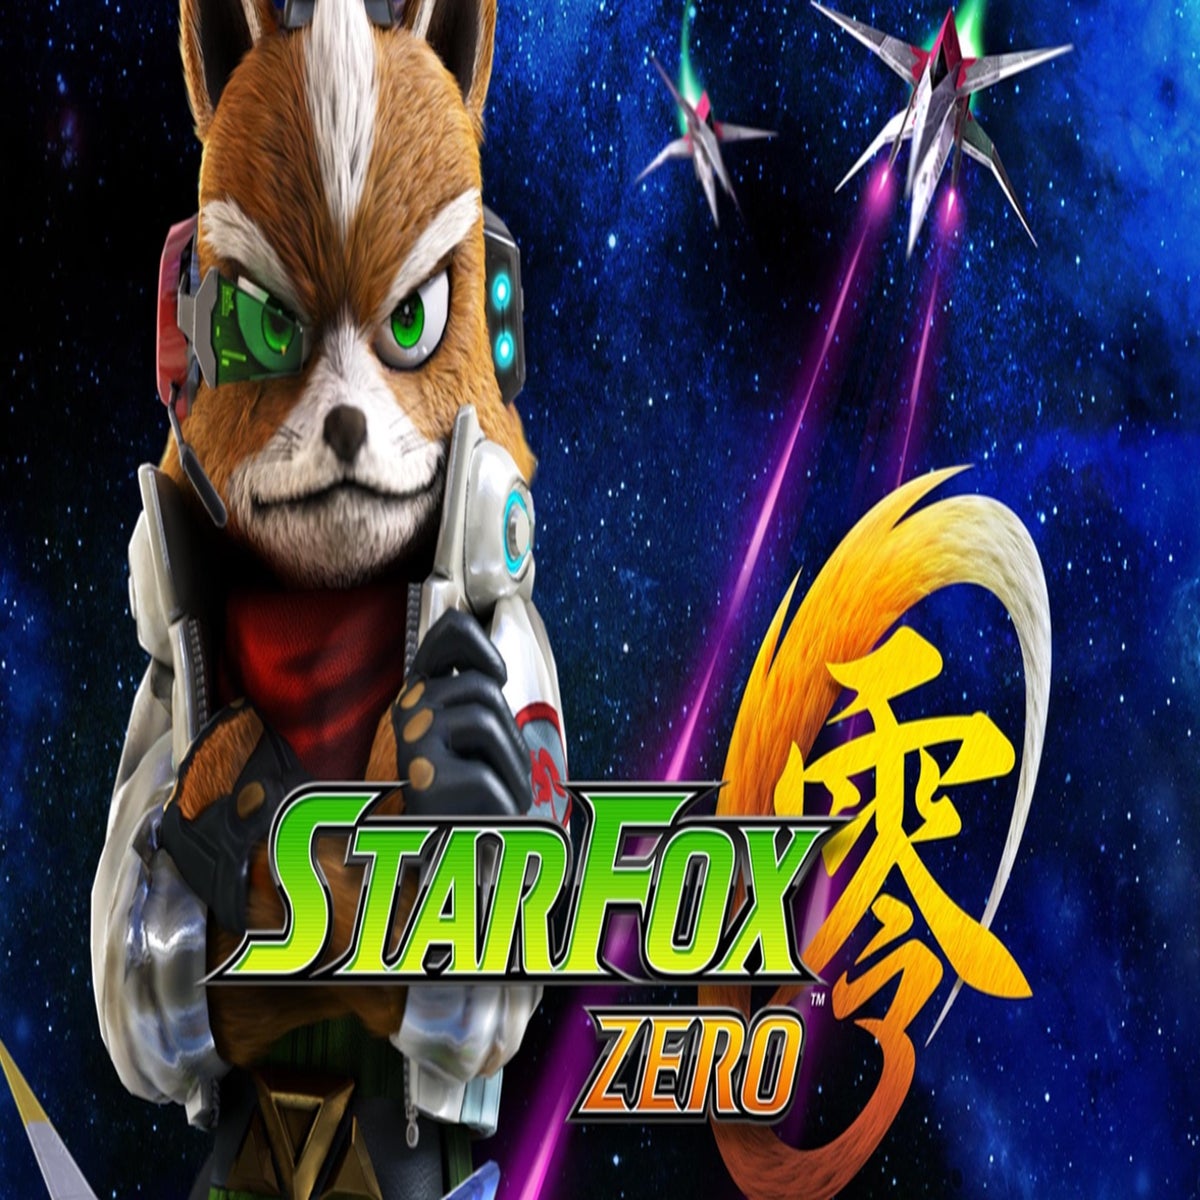 Star Fox Zero Wii U Review: Return to Form